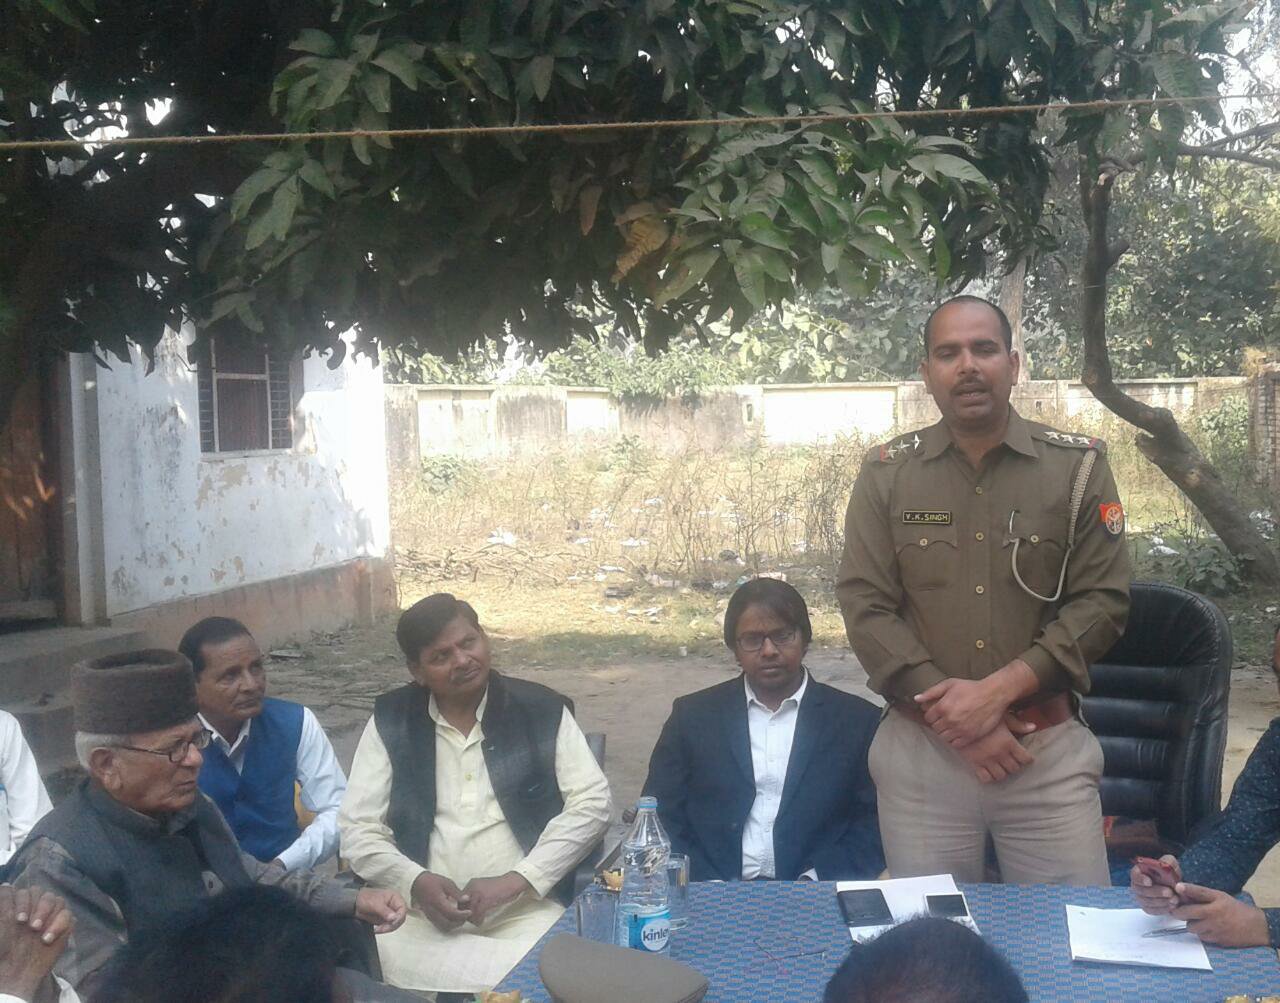 बारह वफात के मद्देनजर कस्बा खीरी पुलिस चौकी में हुई पीस कमेटी की बैठक | New India Times